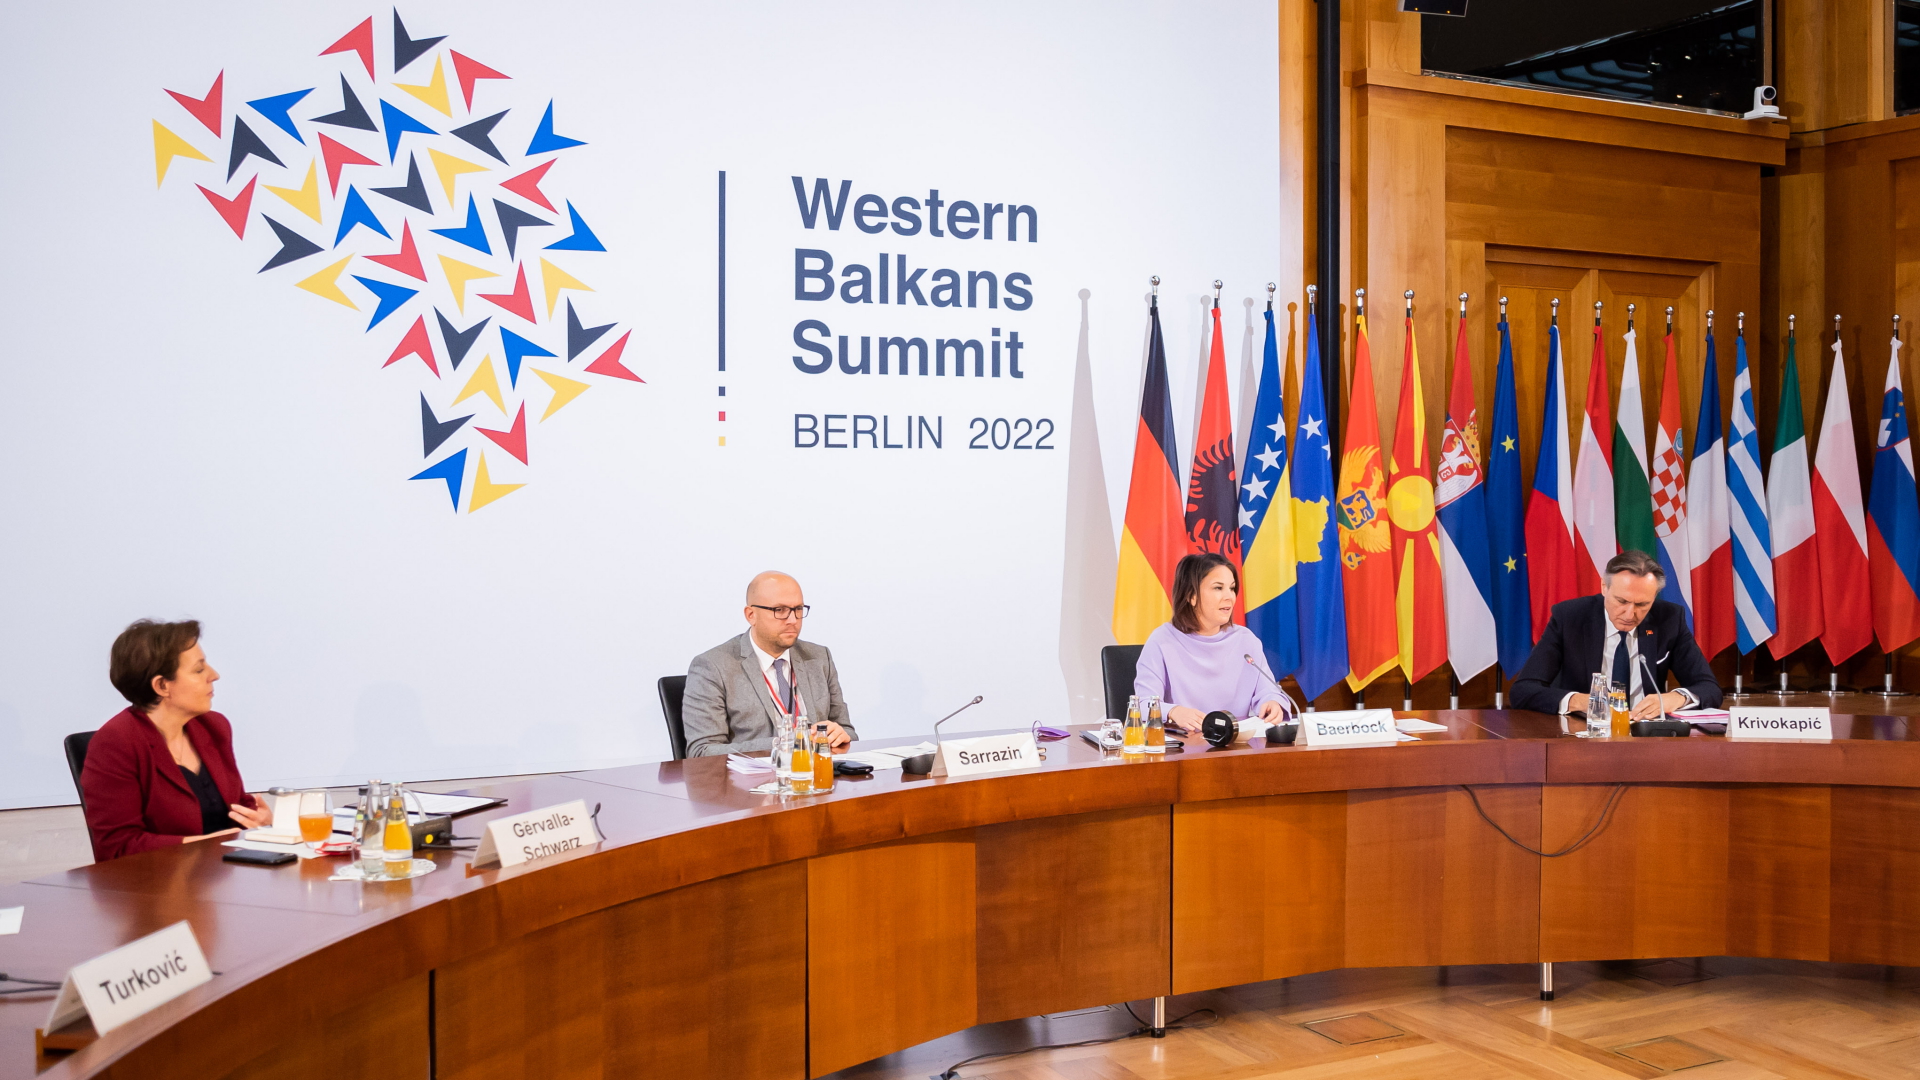 Konferenz zum Westlichen Balkan im Auswärtigen Amt | dpa